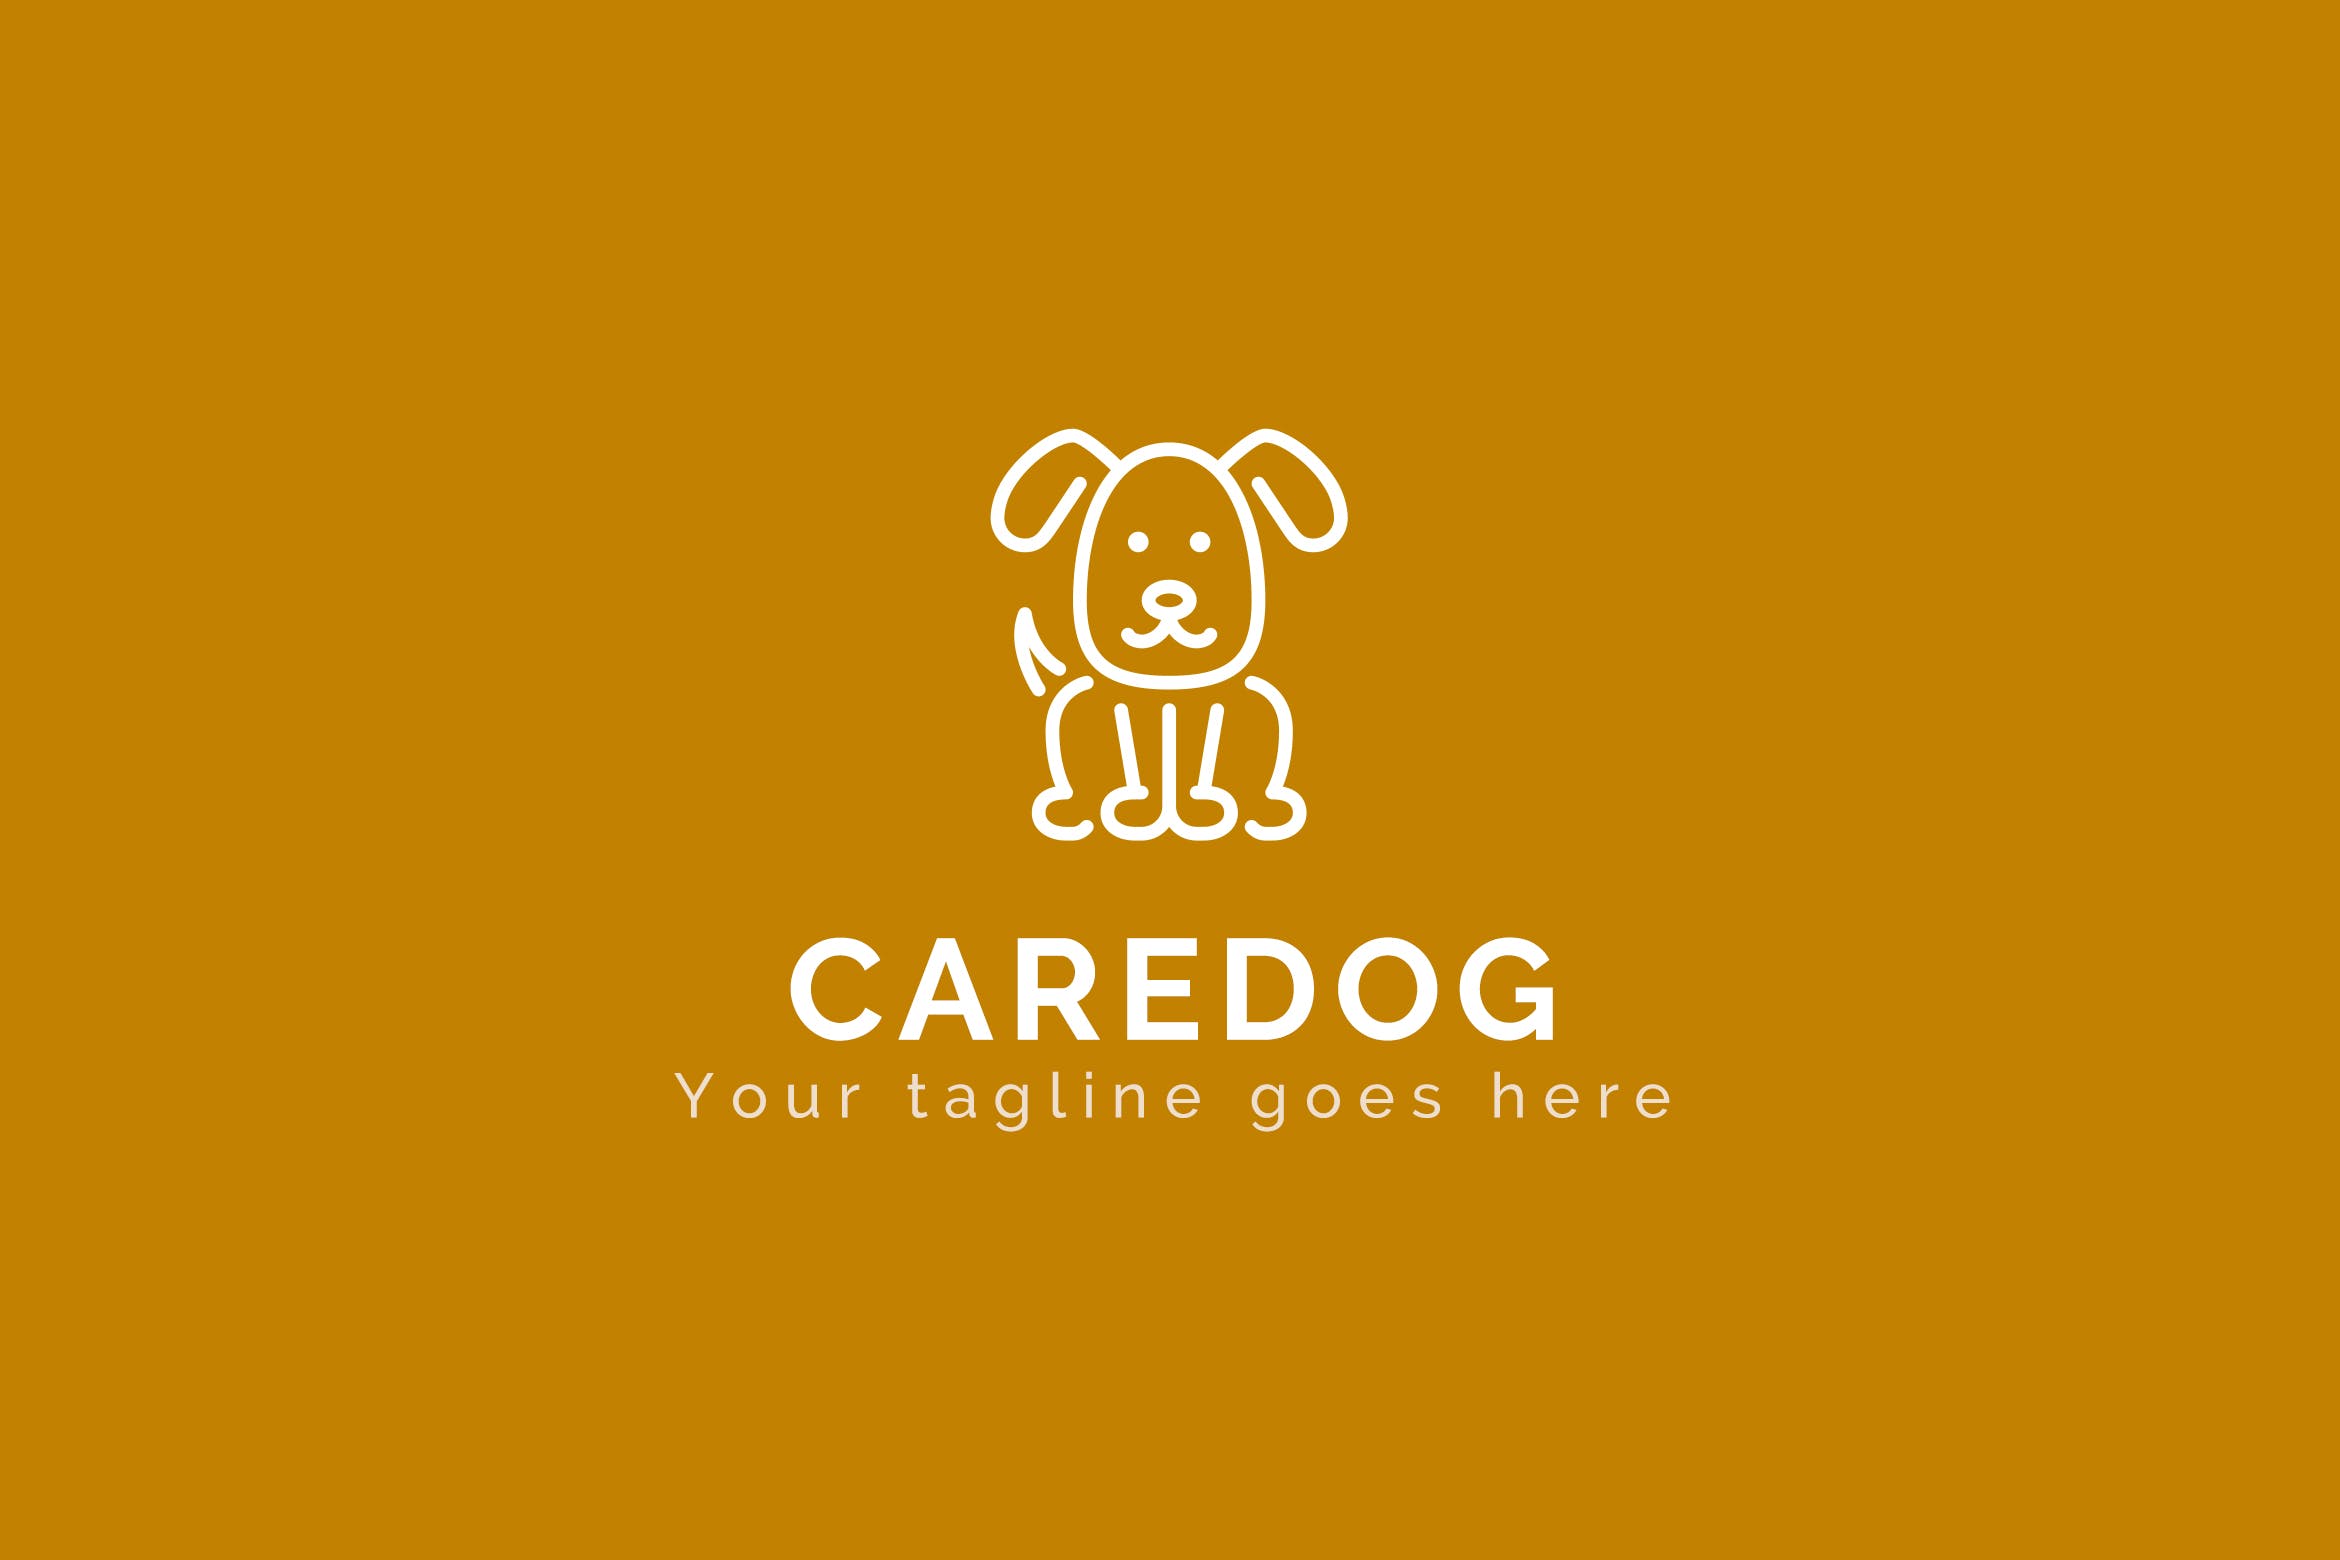 看护犬动物Logo设计素材库精选模板 Caredog – Animal Logo Template插图